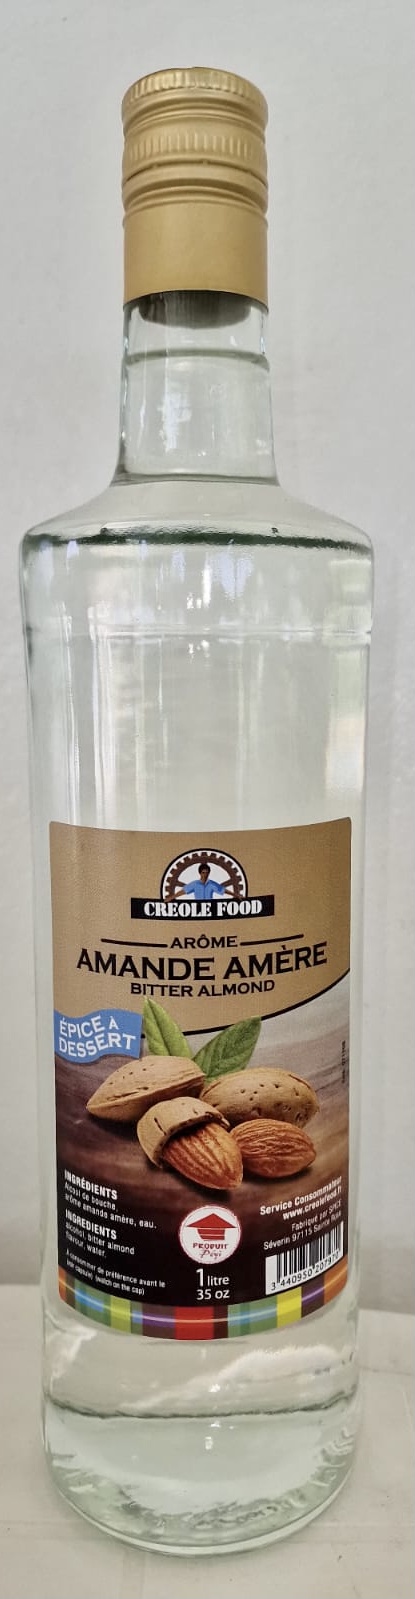 Arôme amande amère - Créole Food sur L'Apero Creole